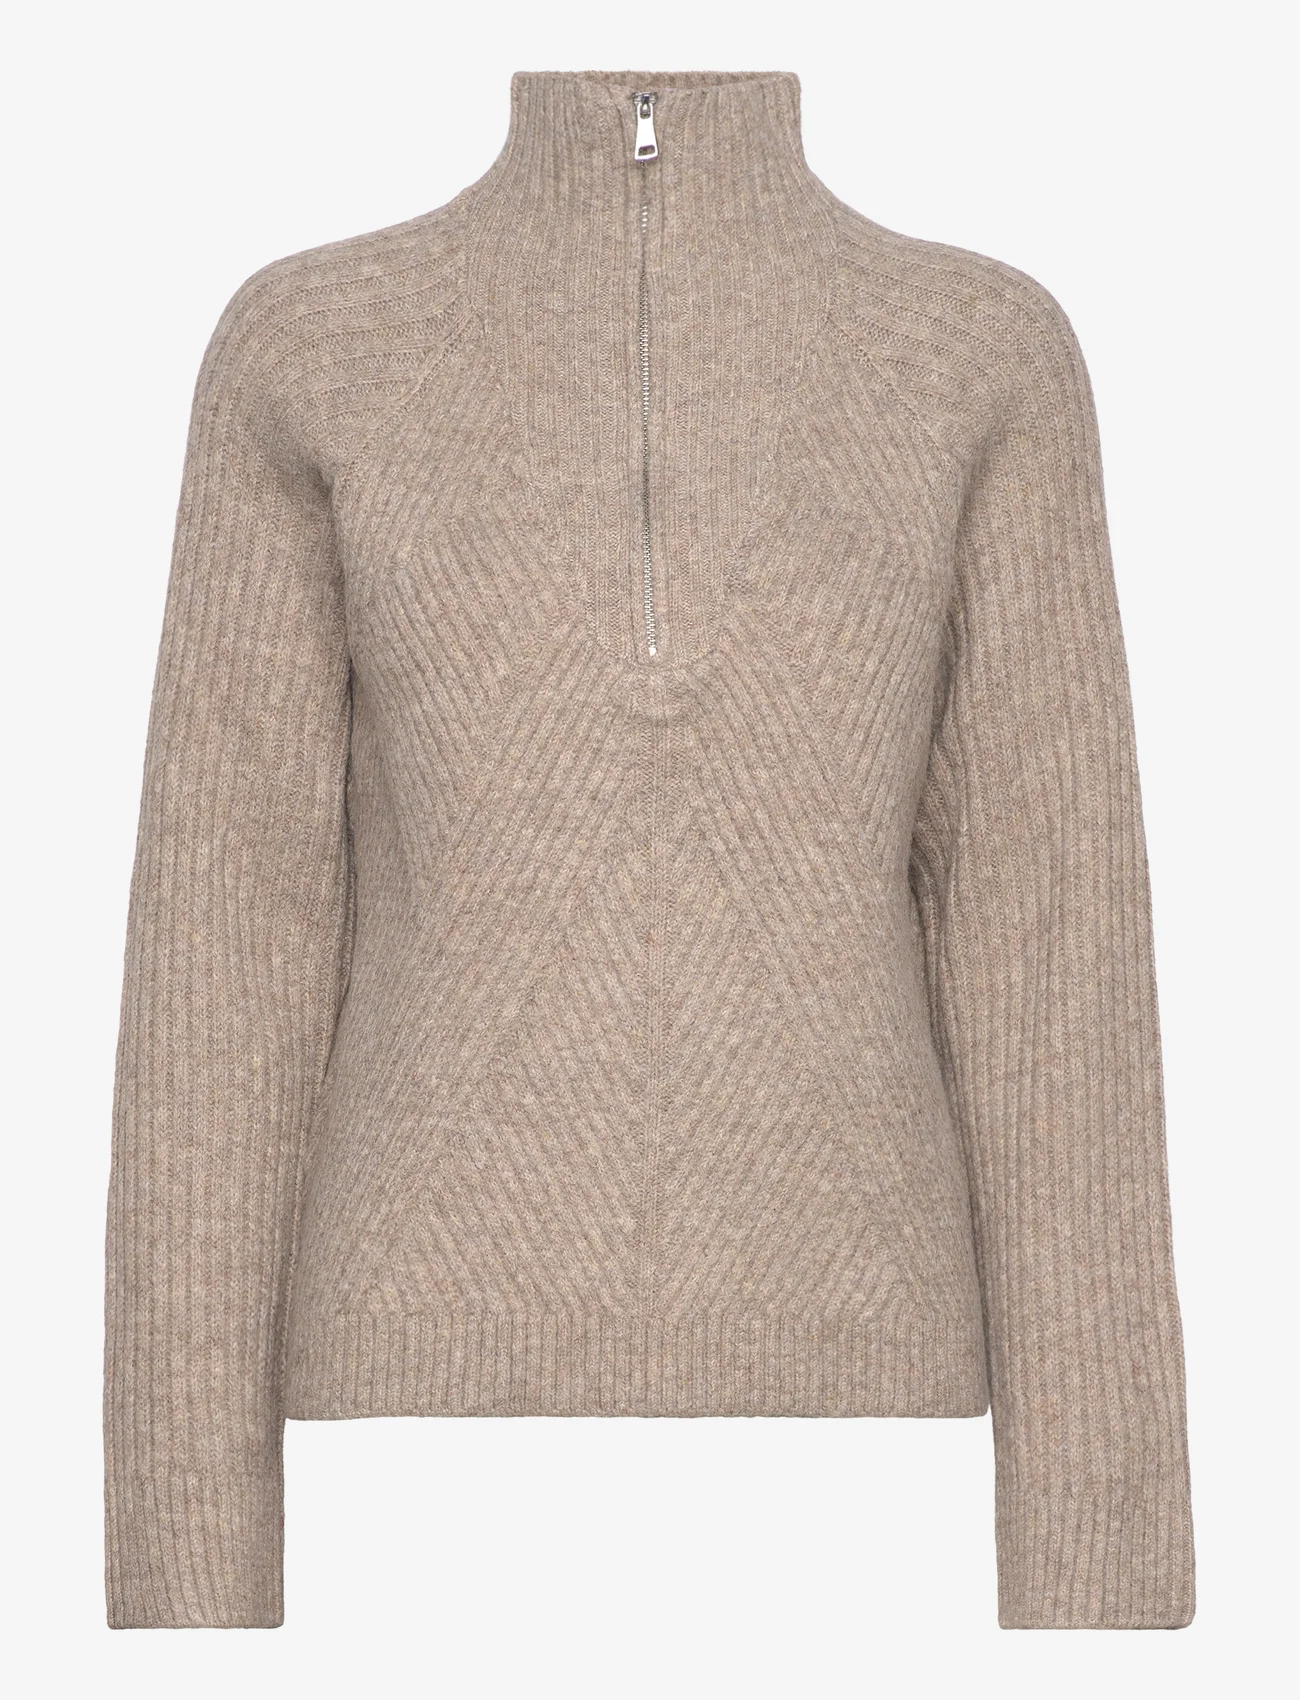 Sofie Schnoor - Sweater - jumpers - warm grey - 0